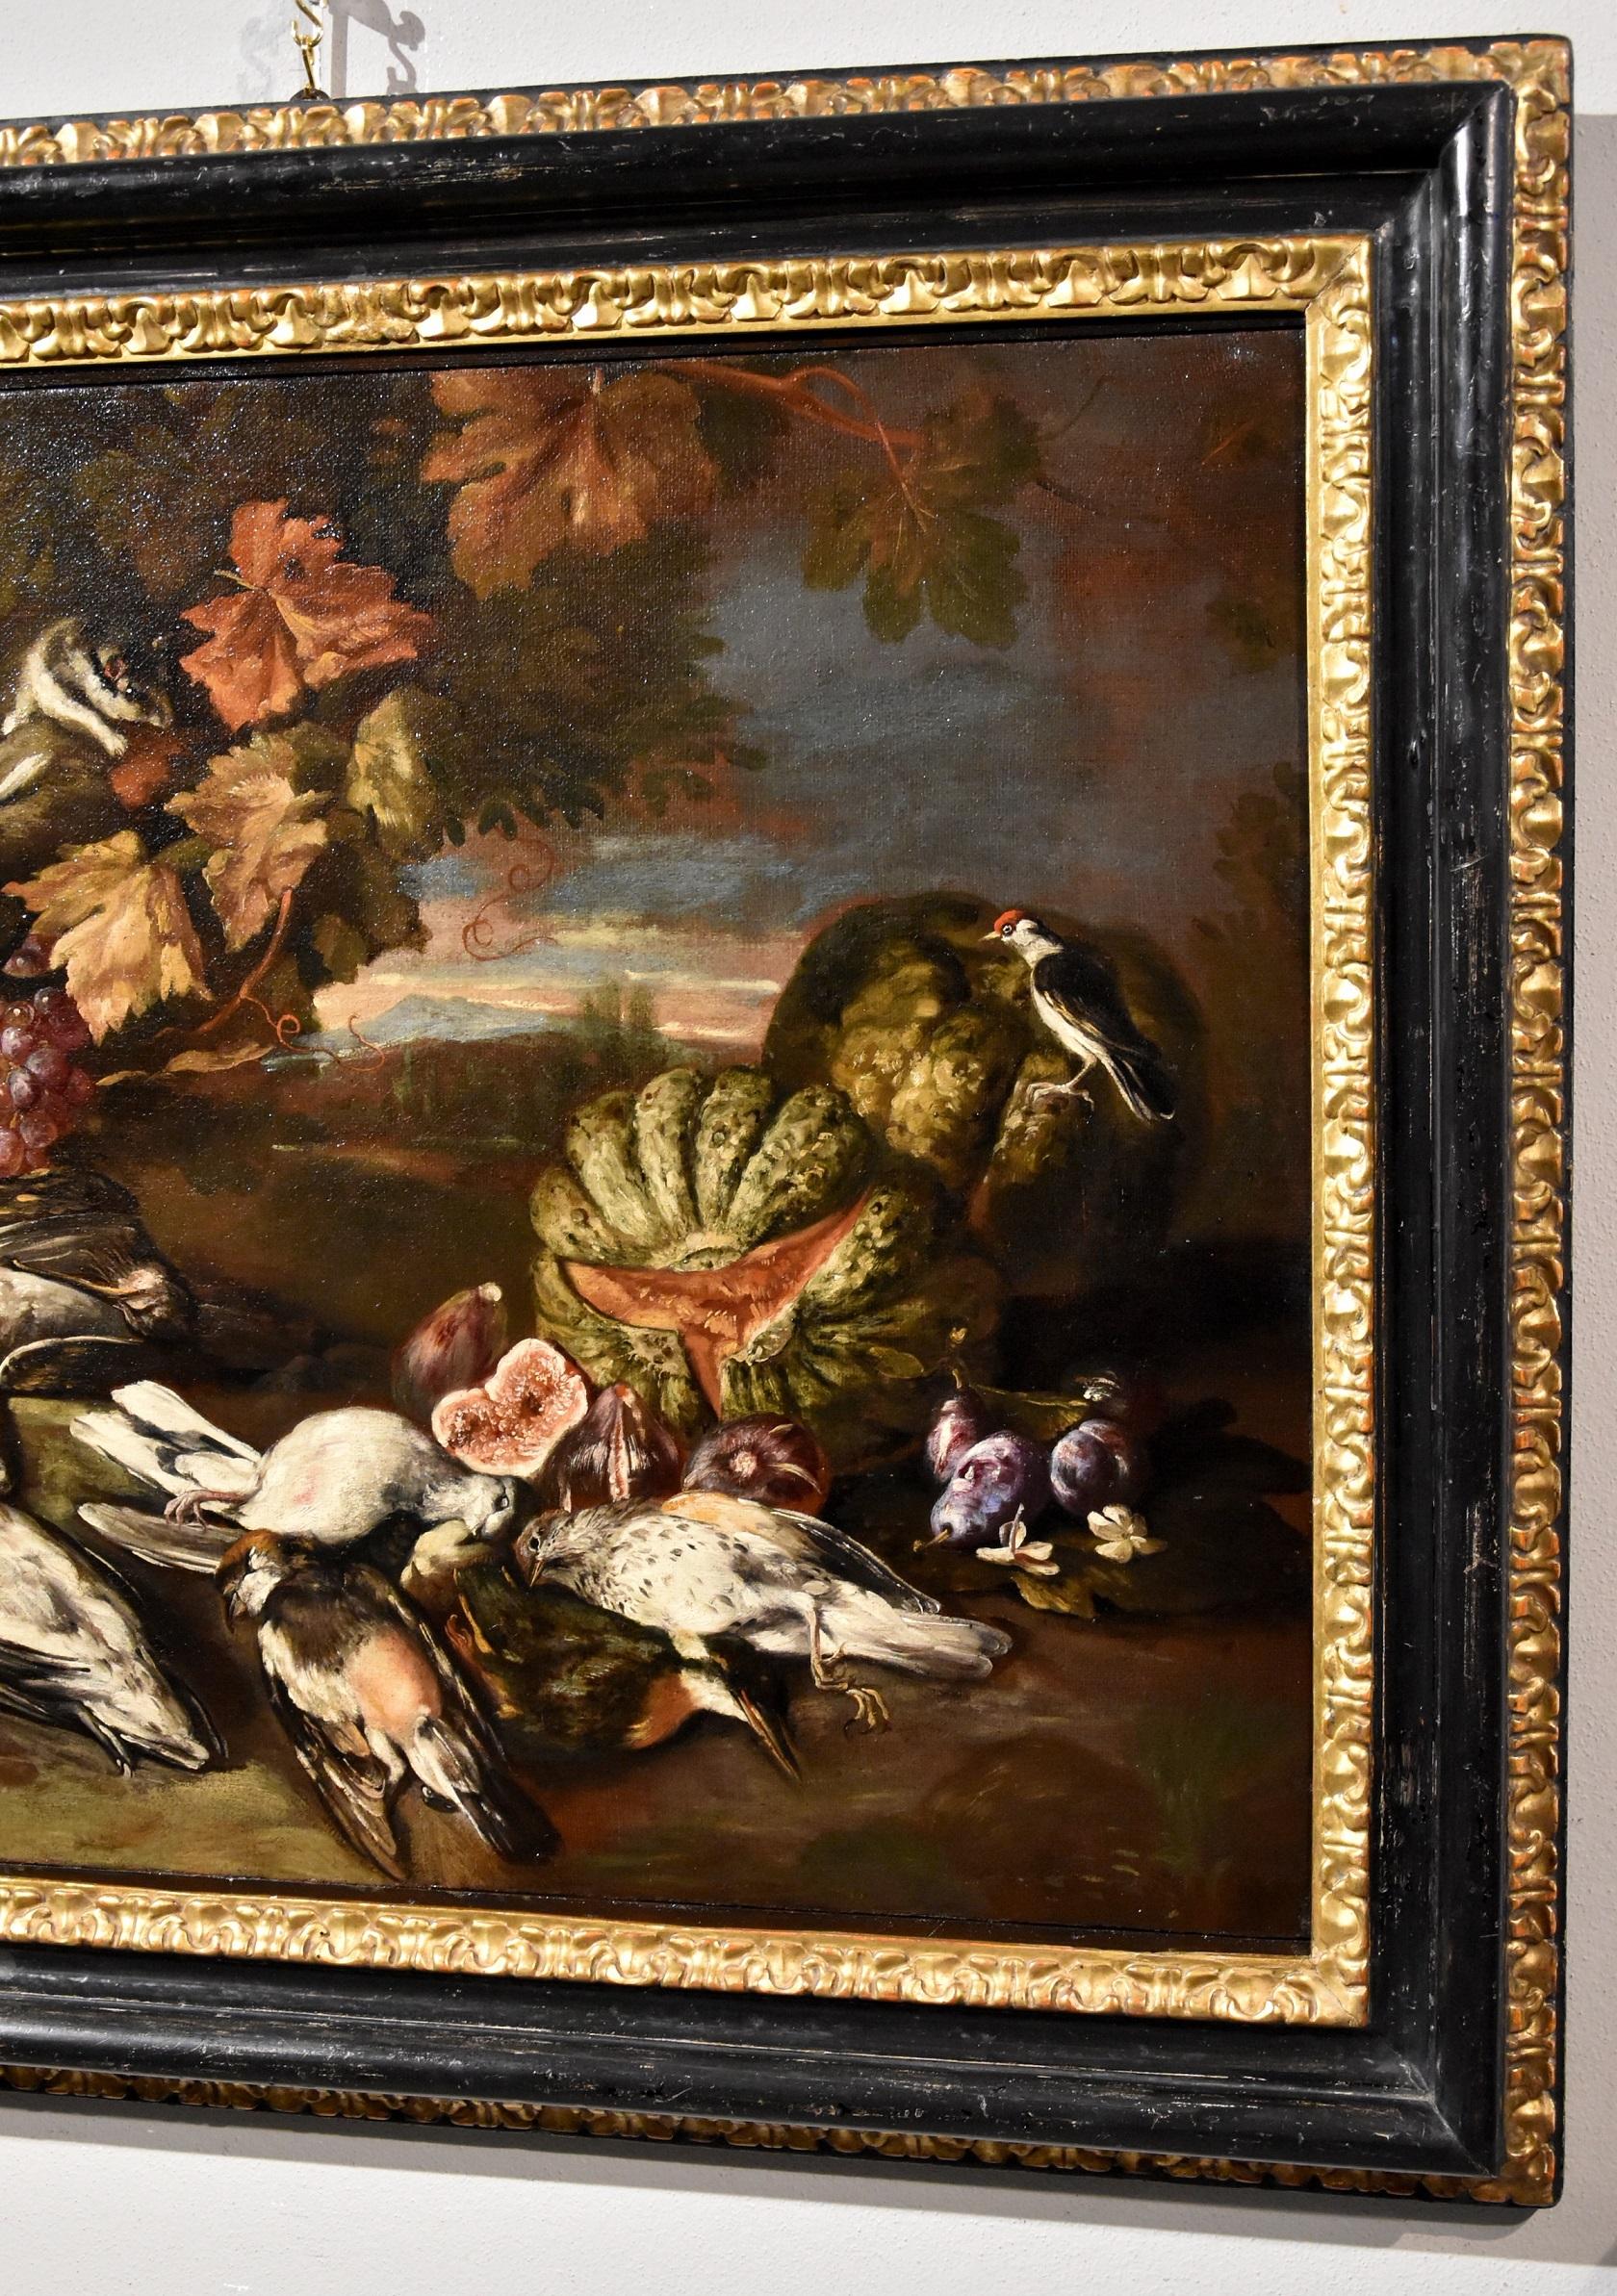 Stilleben in einer Landschaft mit Obst und Wild
Werk des späten römischen Barocks des späten siebzehnten / frühen achtzehnten Jahrhunderts
giovanni Paolo Castelli, bekannt als Spadino (Rom, 1659 - 1730), zugeschrieben

öl auf Leinwand
62 x 76 cm,